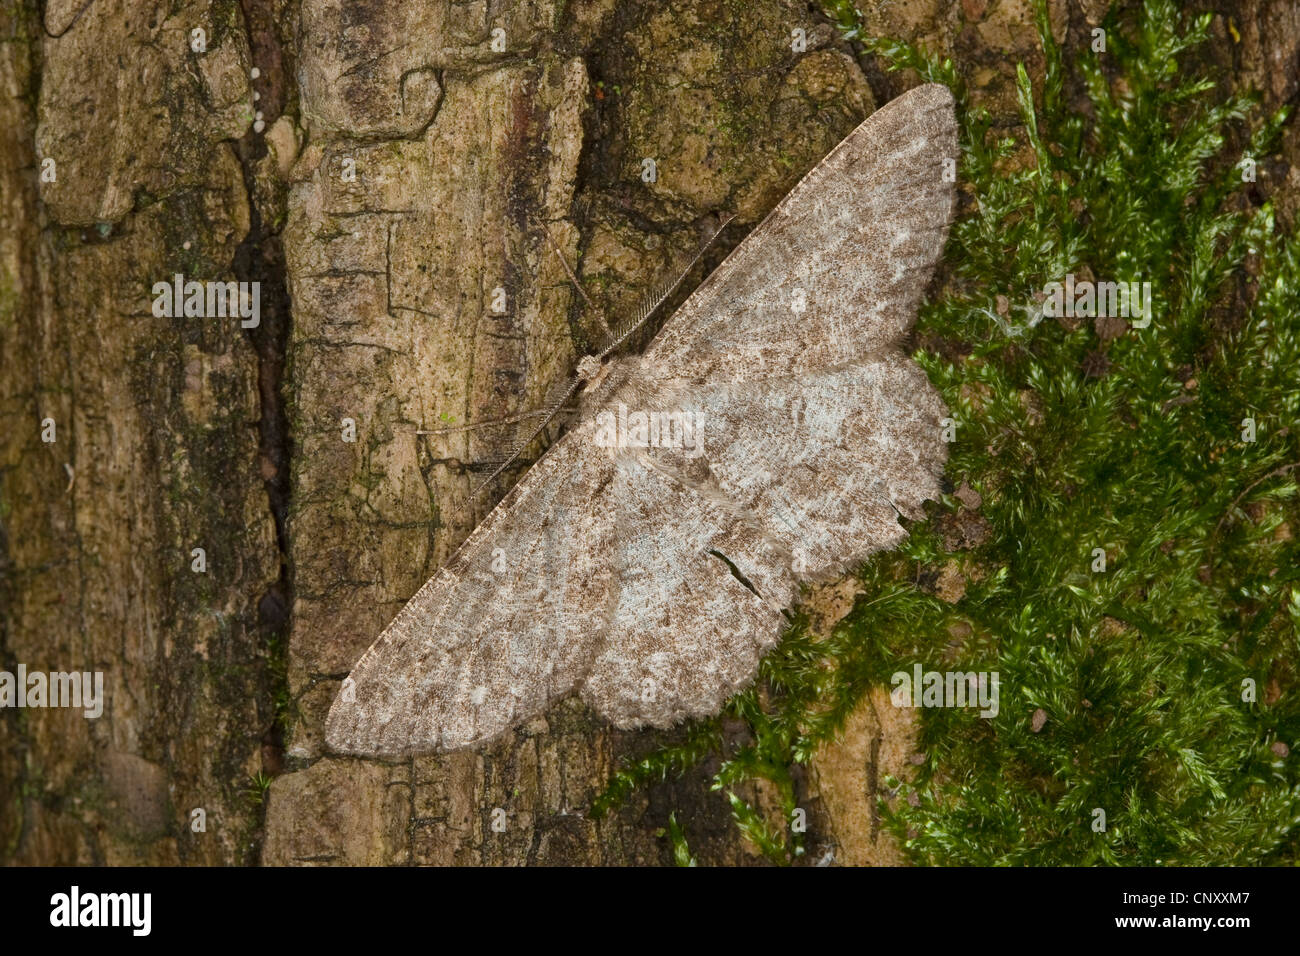 Chêne pâle Hypomecis punctinalis (beauté, Boarmia punctinalis, Boarmia consortaria), assis sur l'écorce, Allemagne Banque D'Images